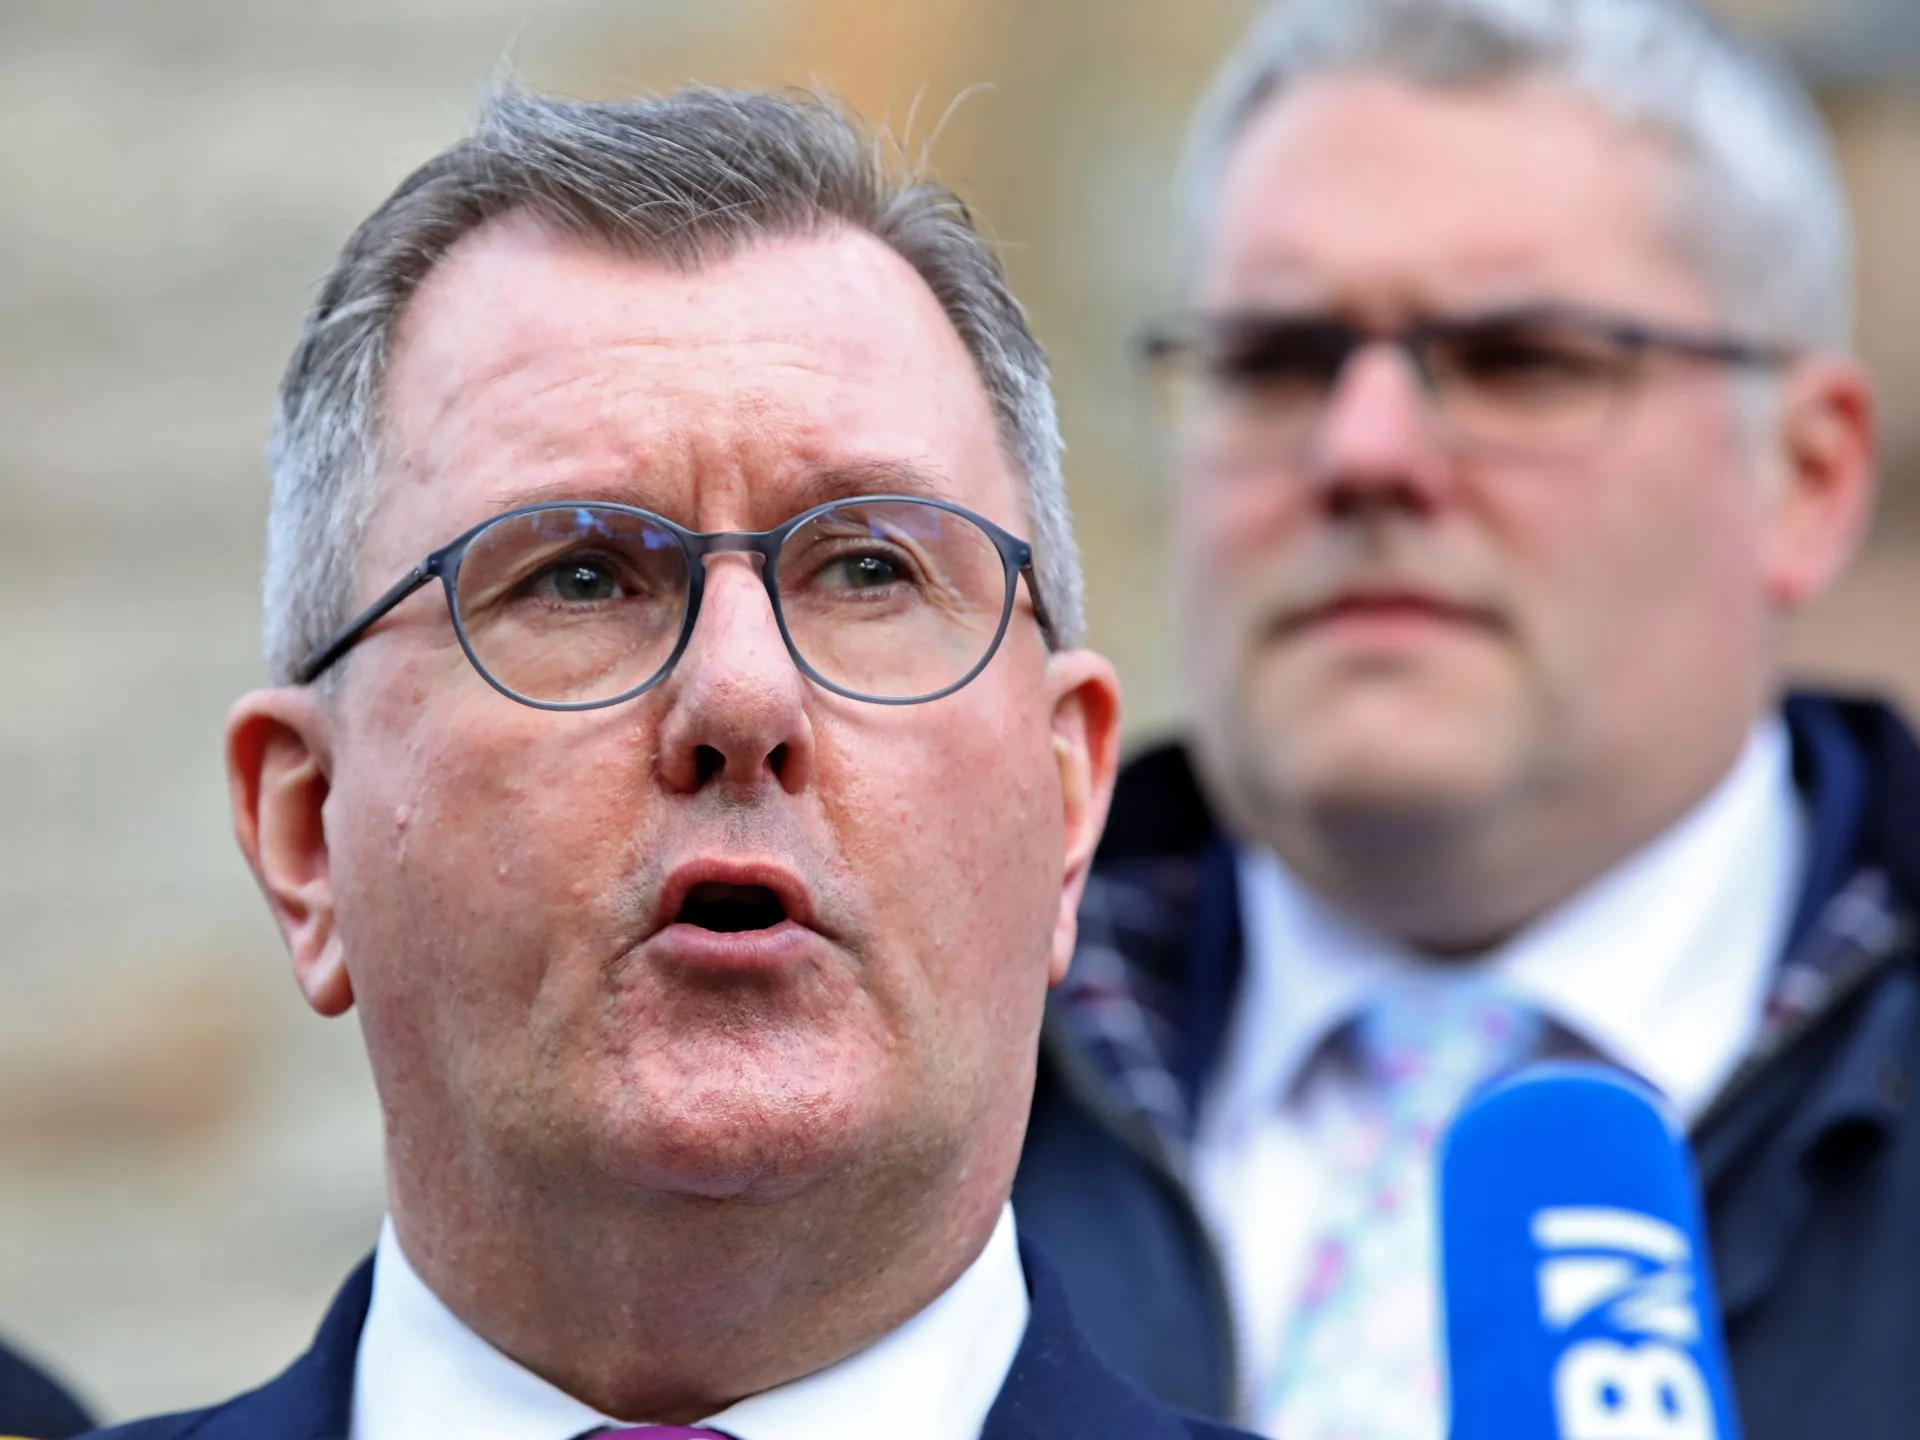 El líder del DUP de Irlanda del Norte, Jeffrey Donaldson, dimite tras las acusaciones de la policía |  Política Noticias